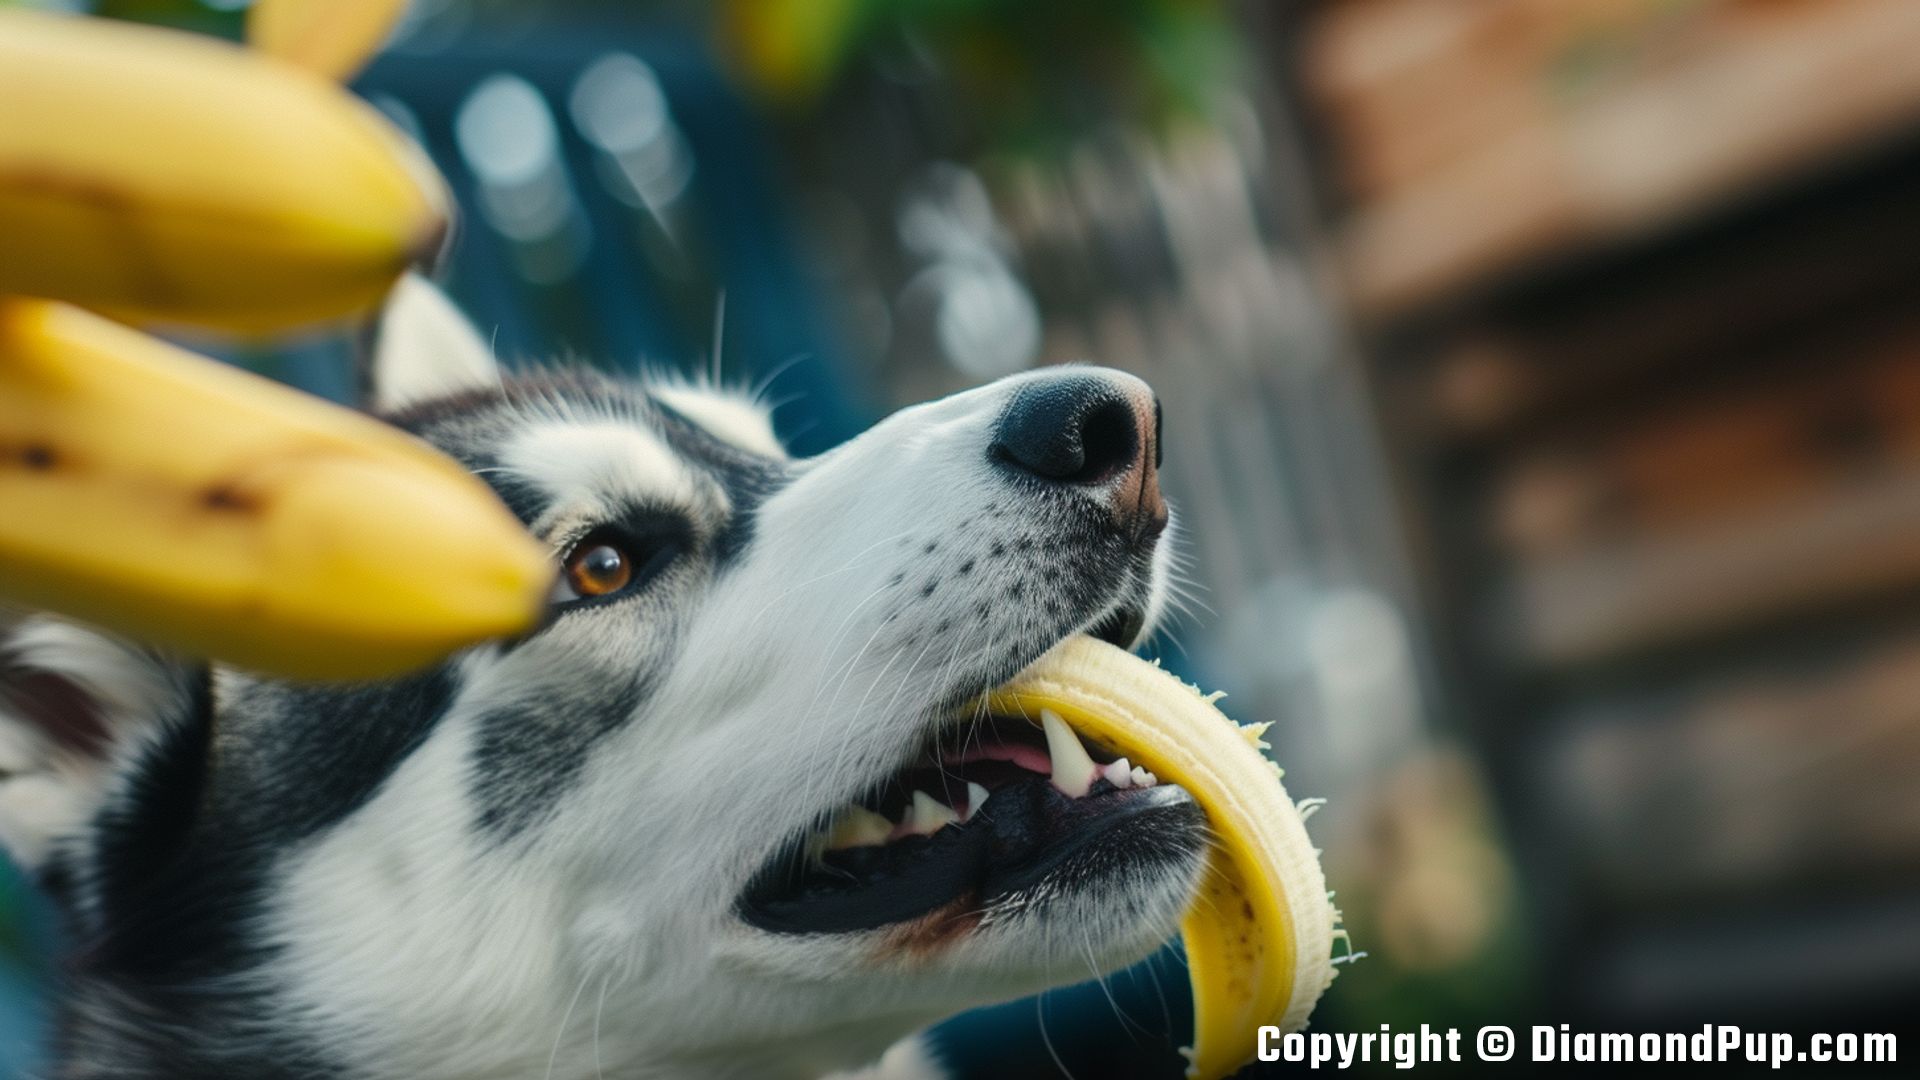 Image of an Adorable Husky Eating Banana